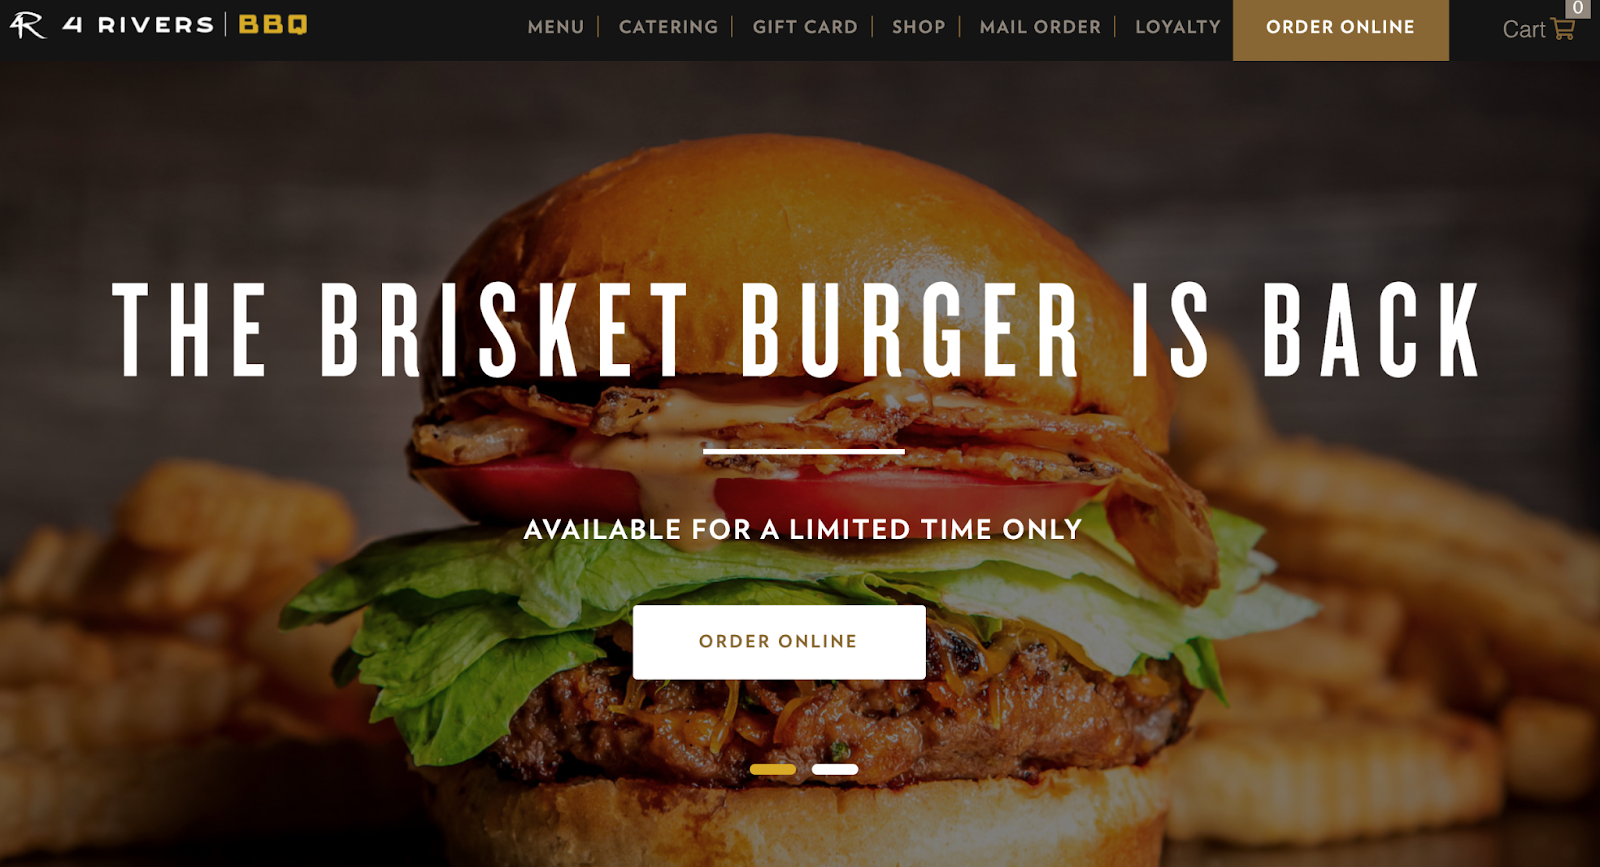 Halaman beranda situs web rumah asap 4 sungai menampilkan gambar dengan burger keju